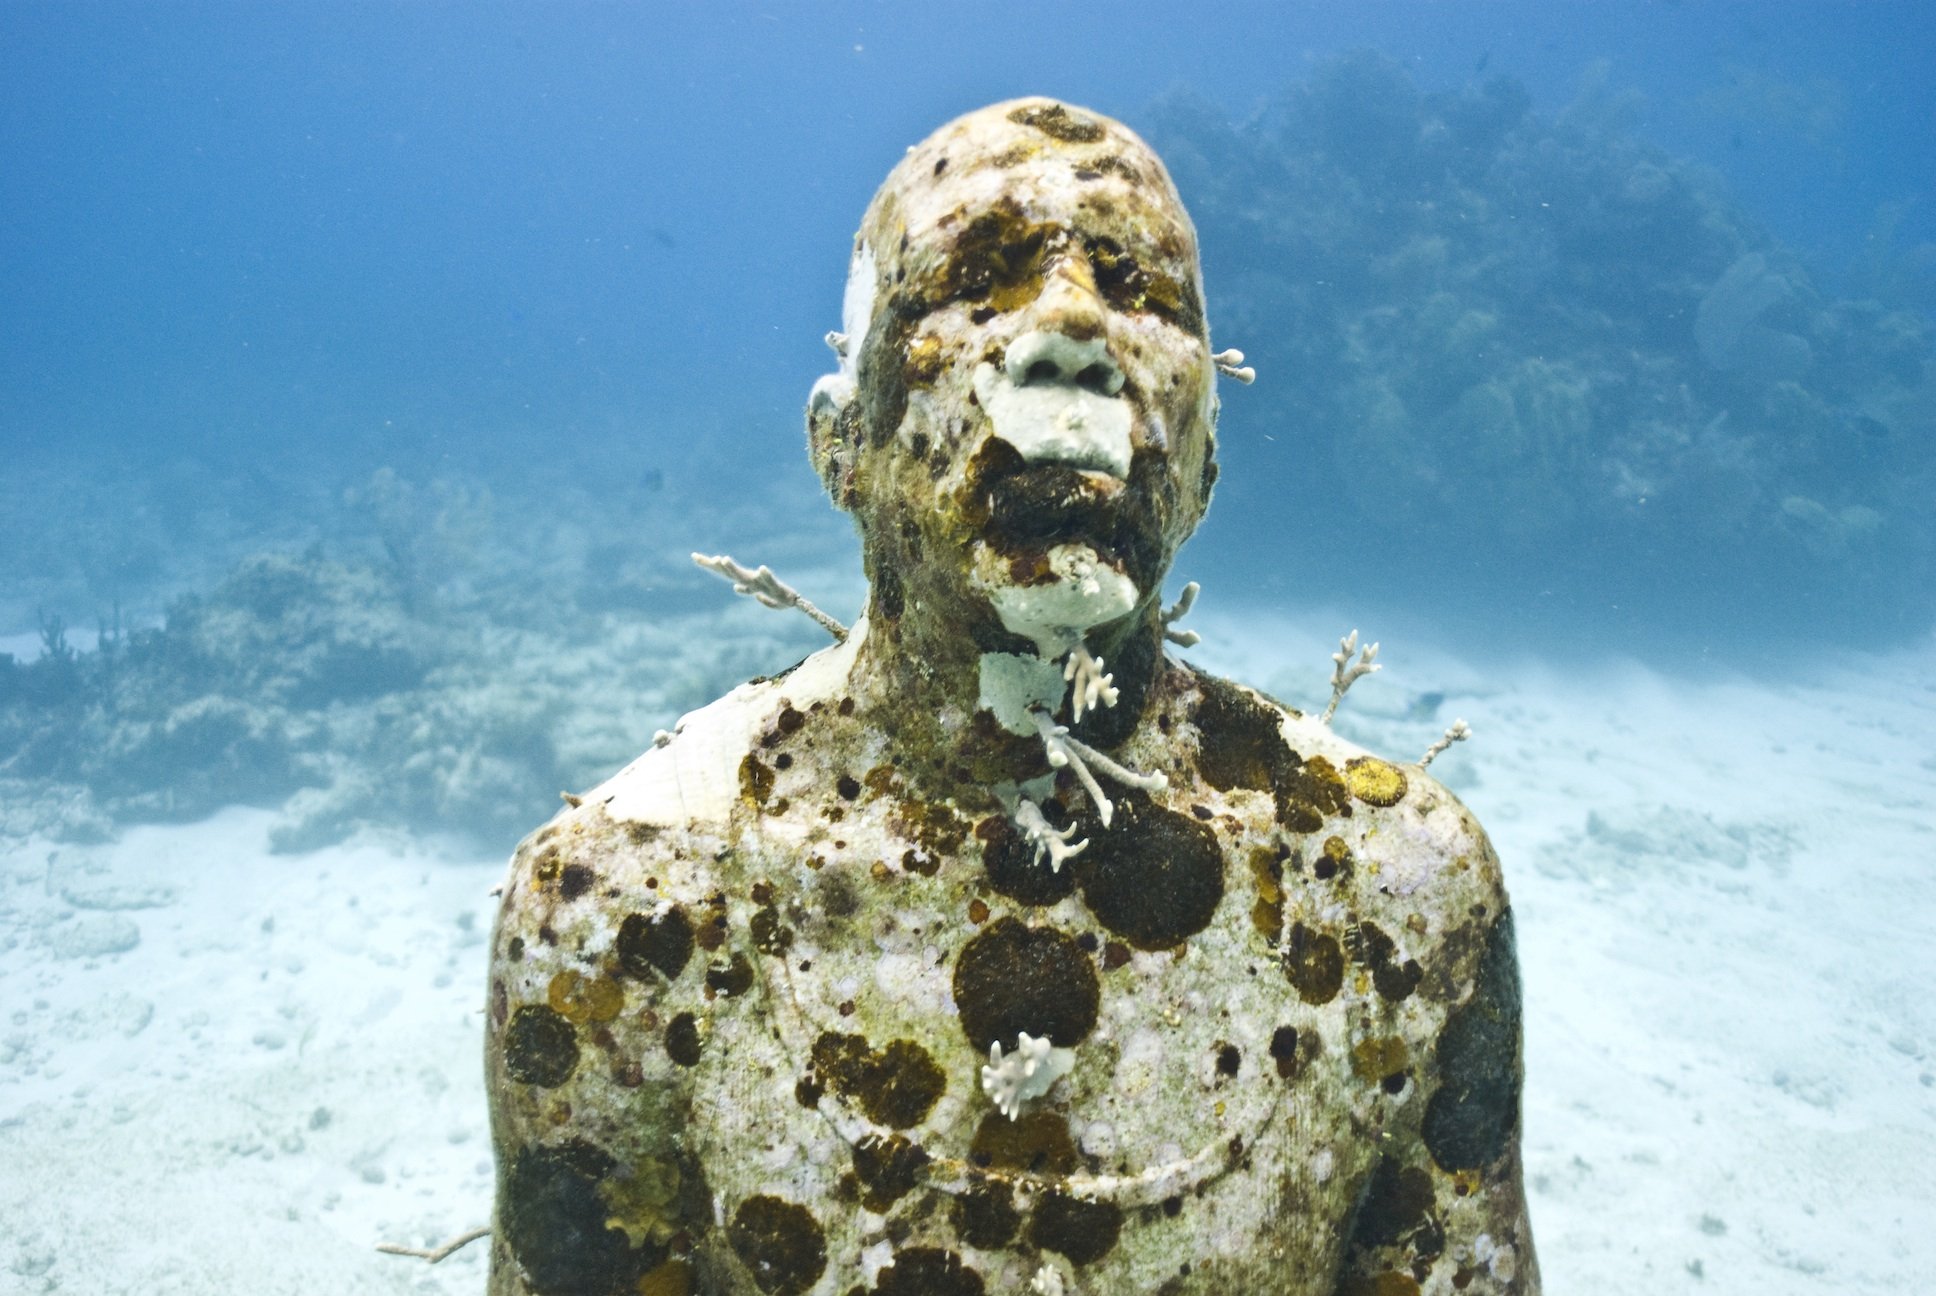 Где на дне океана. Подводный музей Джейсона де Кайрес Тейлора. Jason DECAIRES Taylor скульптор. Канкун Мексика подводный музей. Музей подводных скульптур в Канкуне.